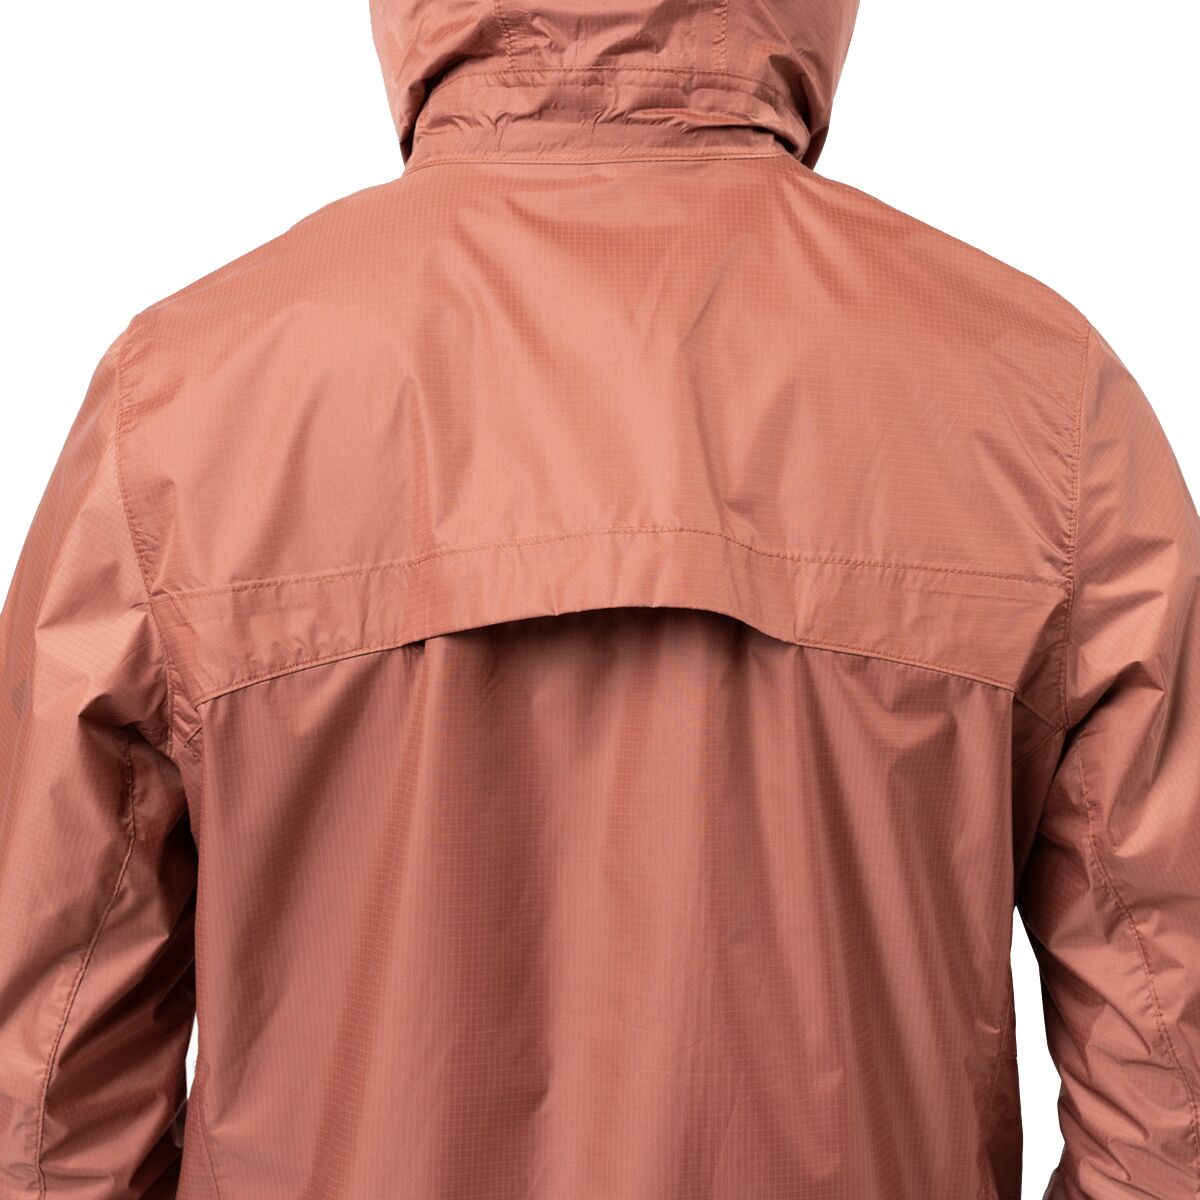 Sierra Designs Microlight 2.0 Rain Jacket - Women's - Clothing